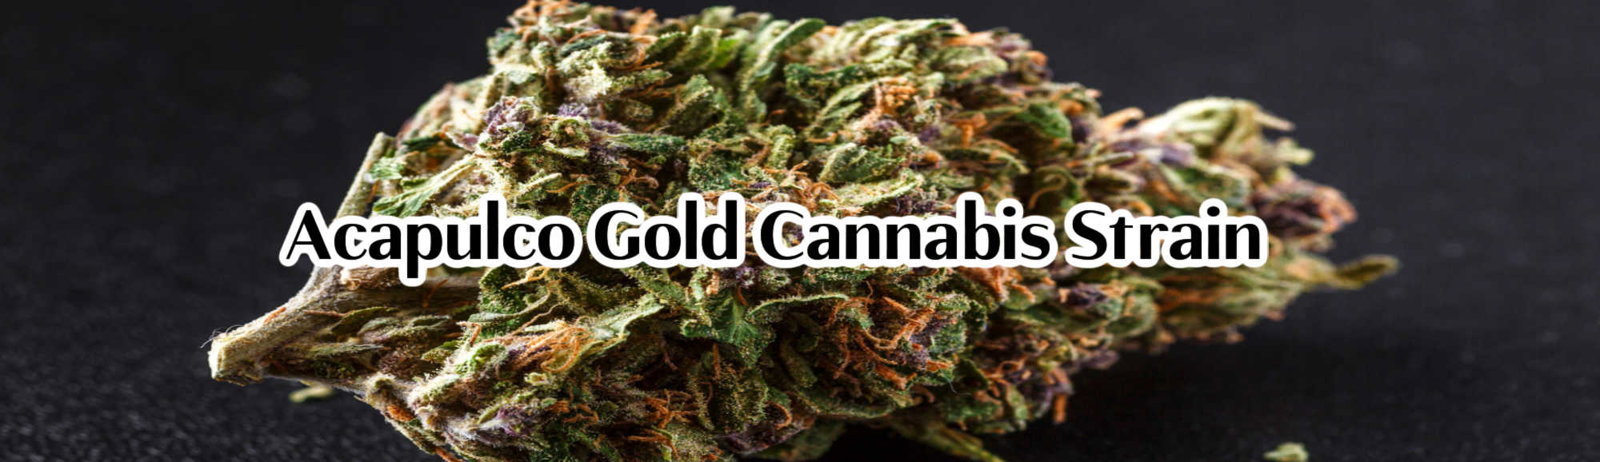 Acapulco Gold cannabis strain